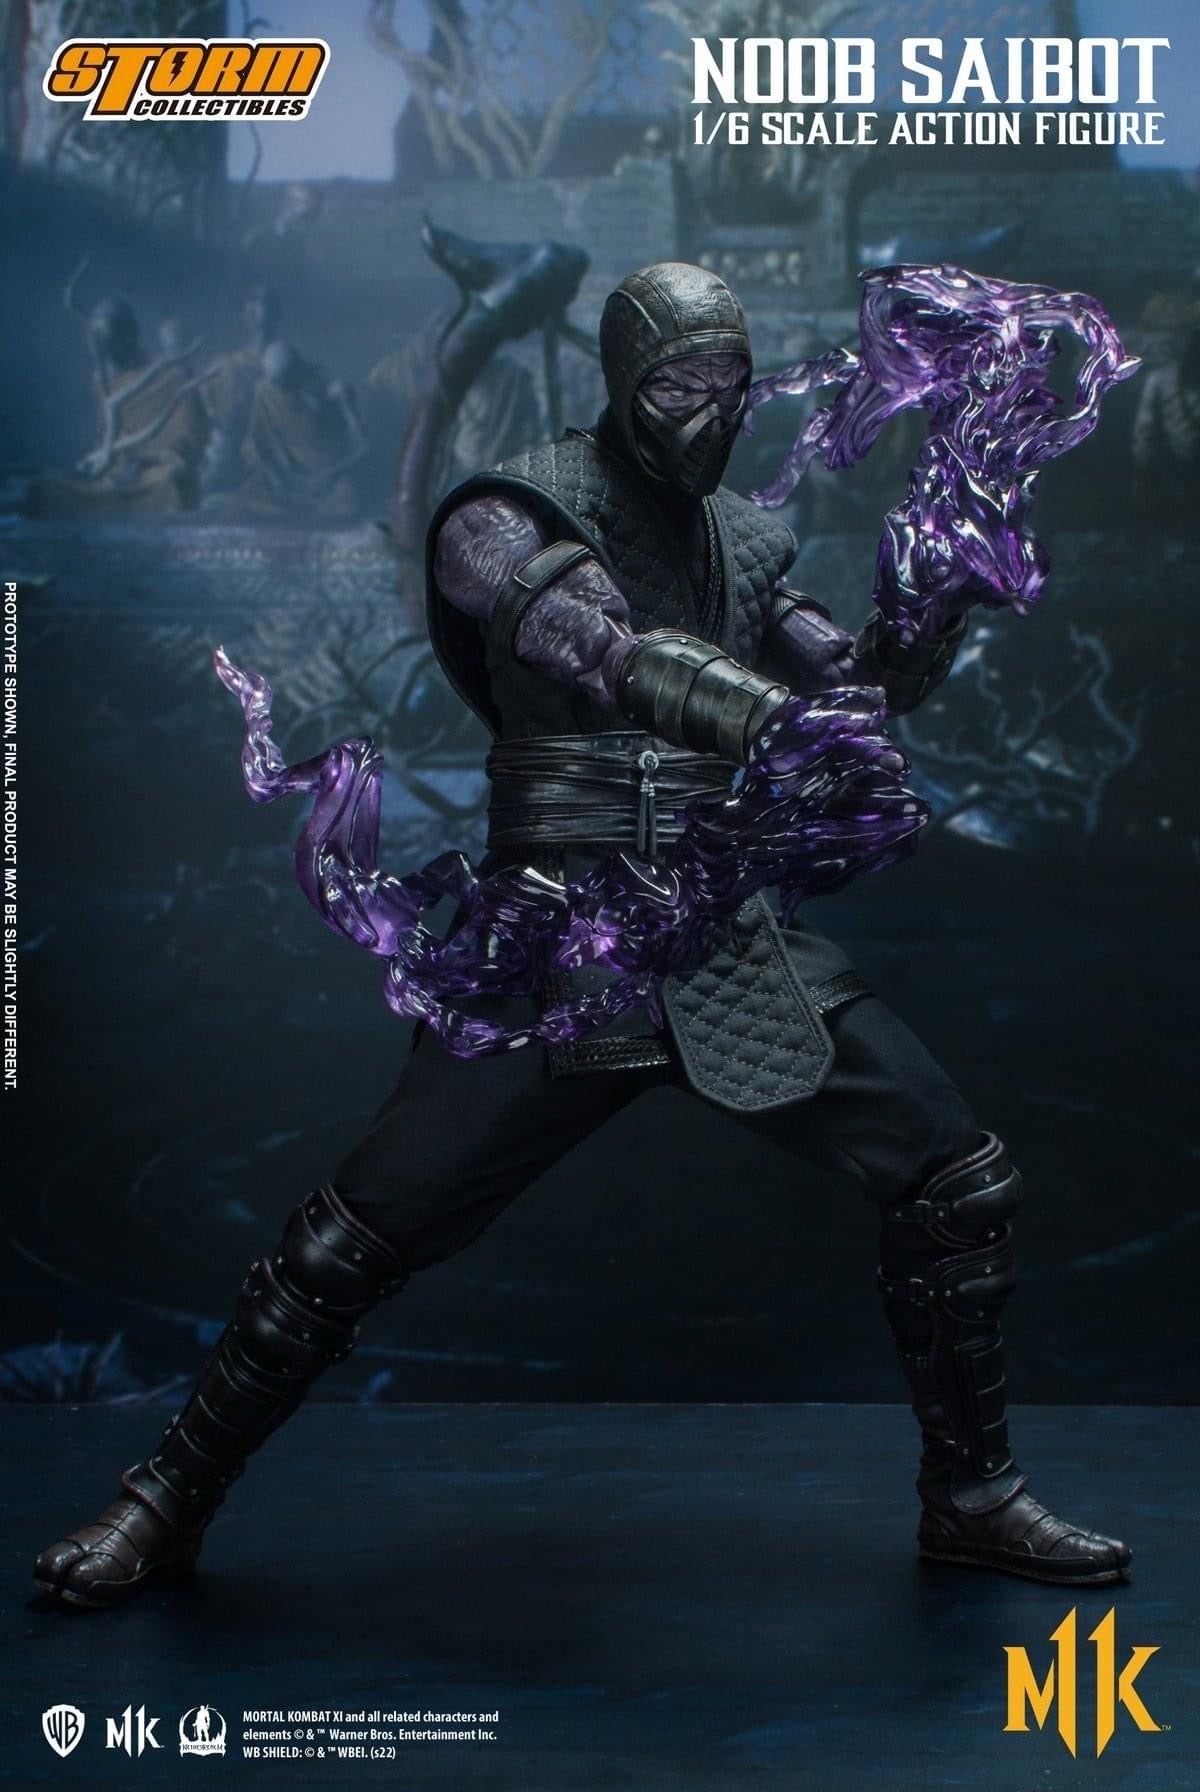 Pedido Figura Noob Saibot - Mortal Kombat 11 marca Storm Collectibles escala 1/6